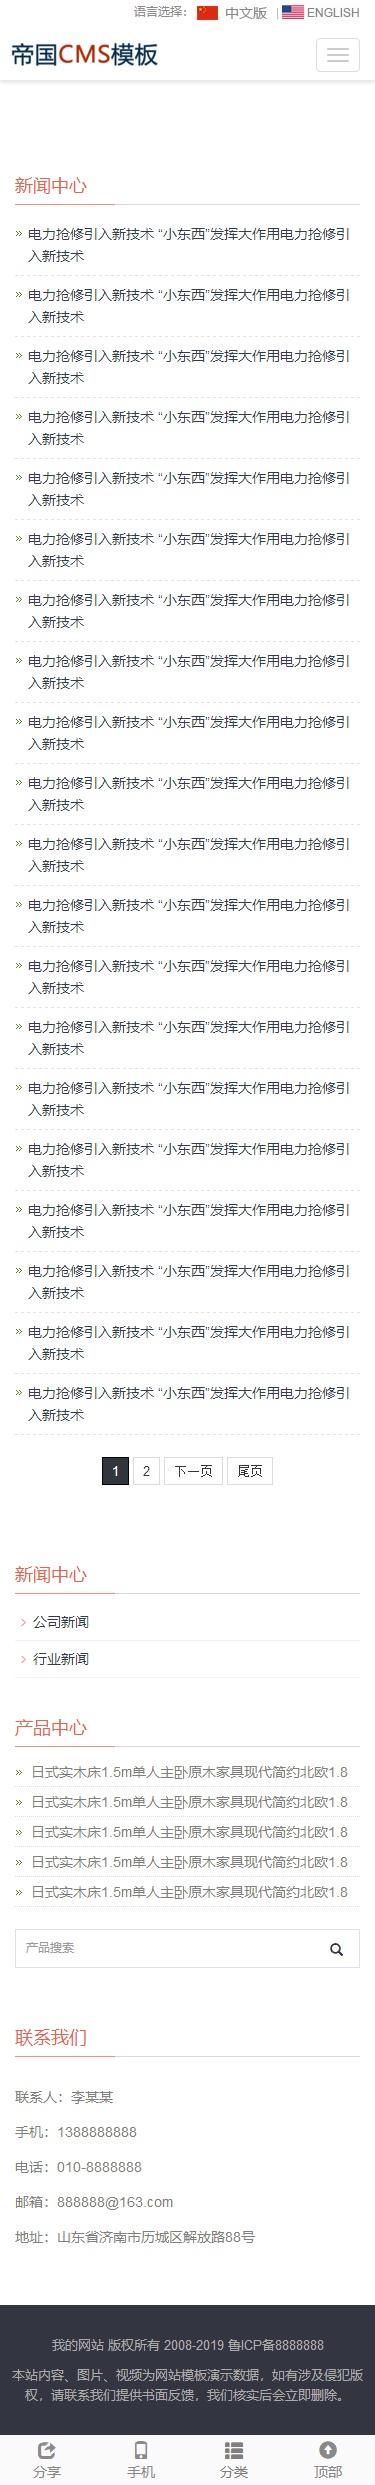 中英文双语自适应帝国cms企业网站模板外贸企业网站源码_手机版新闻列表页